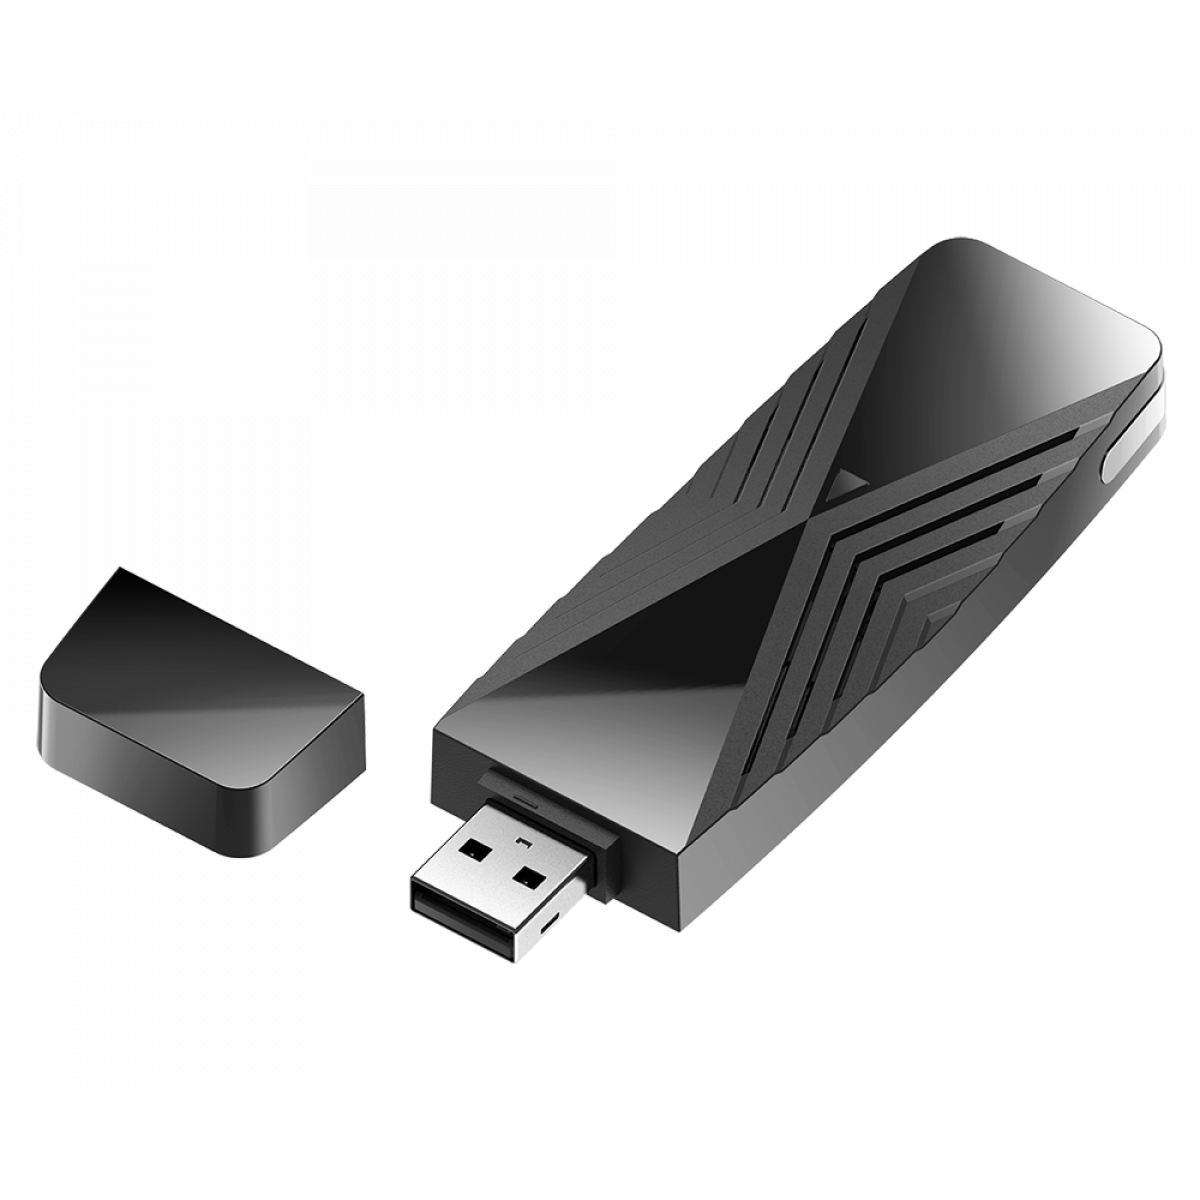 USB Wifi DWA-X1850